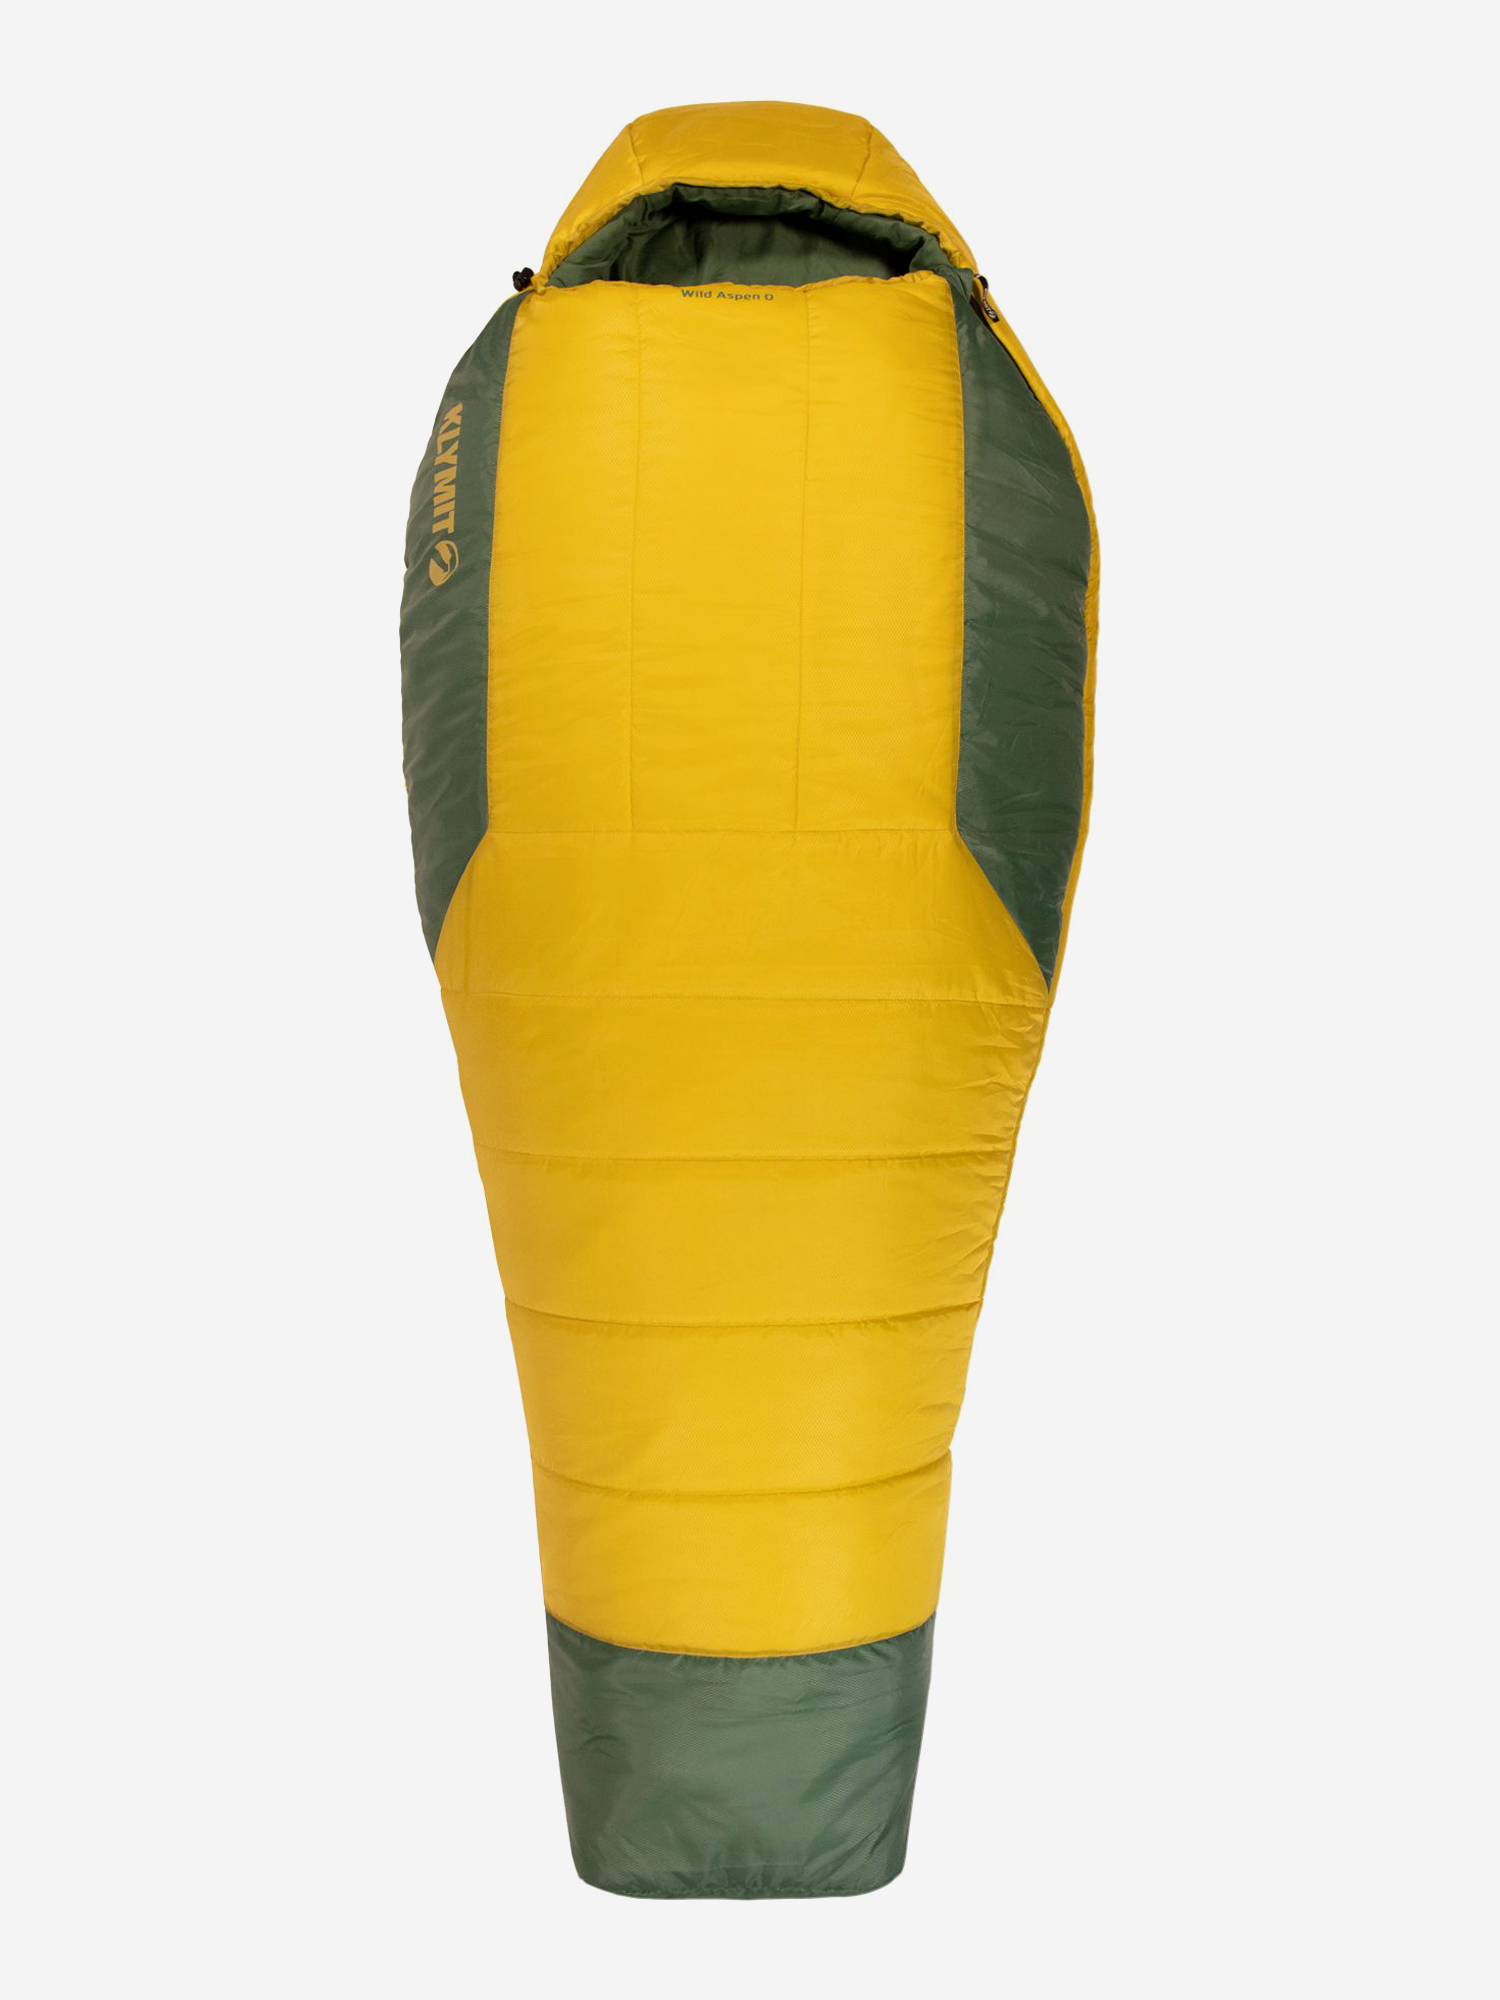 Спальный мешок KLYMIT Wild Aspen 0 Large (13WAYL00D) желто-зеленый, Желтый мешок для обуви на шнурке желтый оранжевый